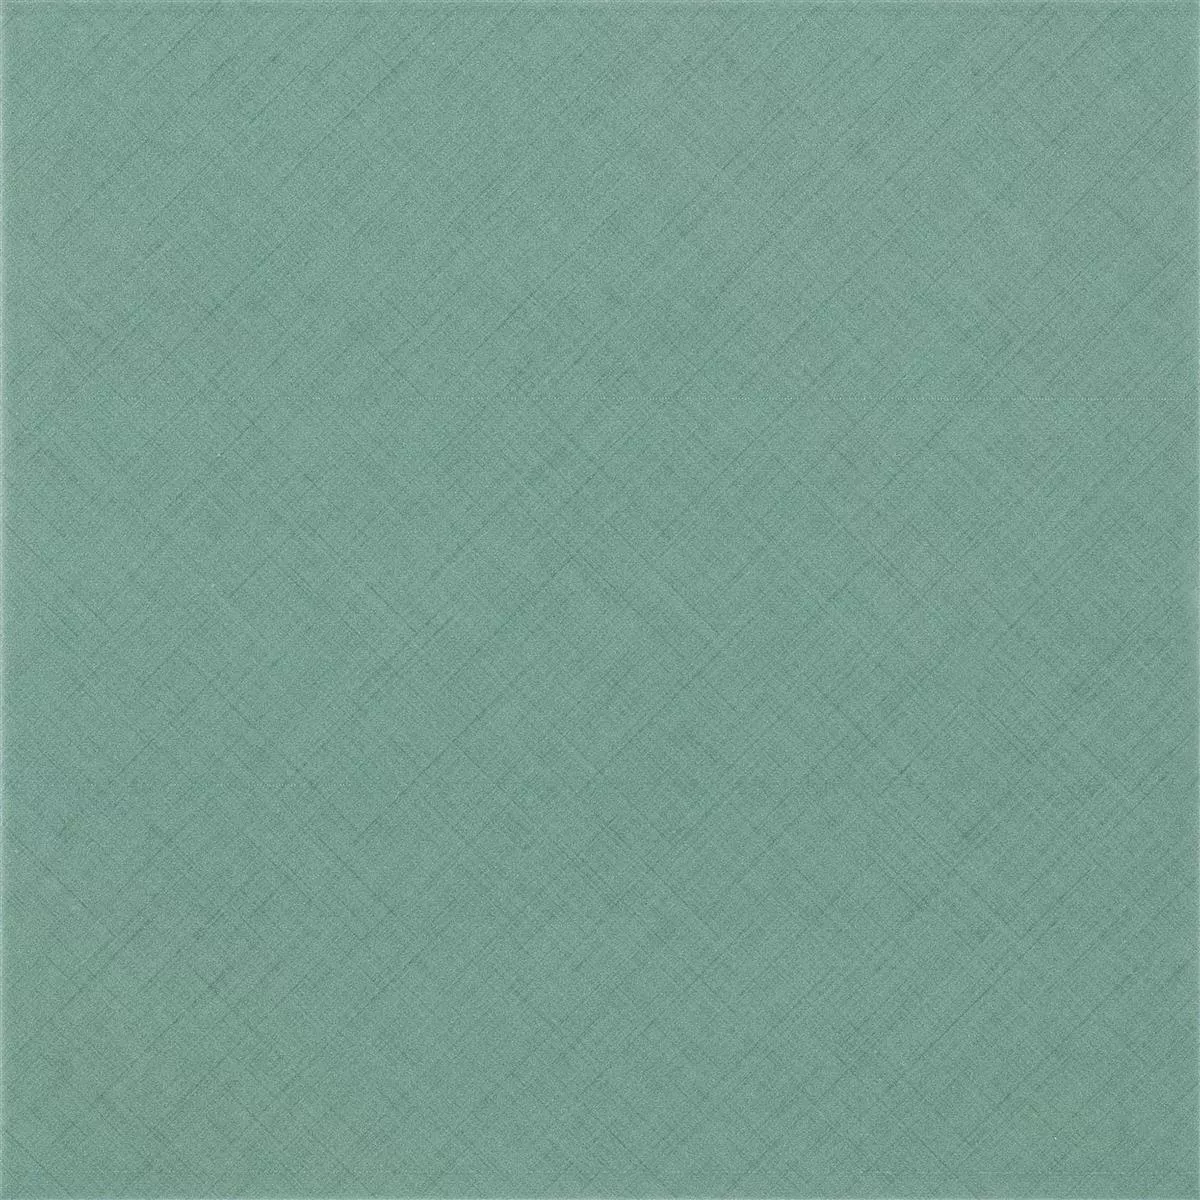 Πρότυπο από Πλακάκια Δαπέδου Flowerfield 18,5x18,5cm Πράσινος Πλακάκι Bάσης